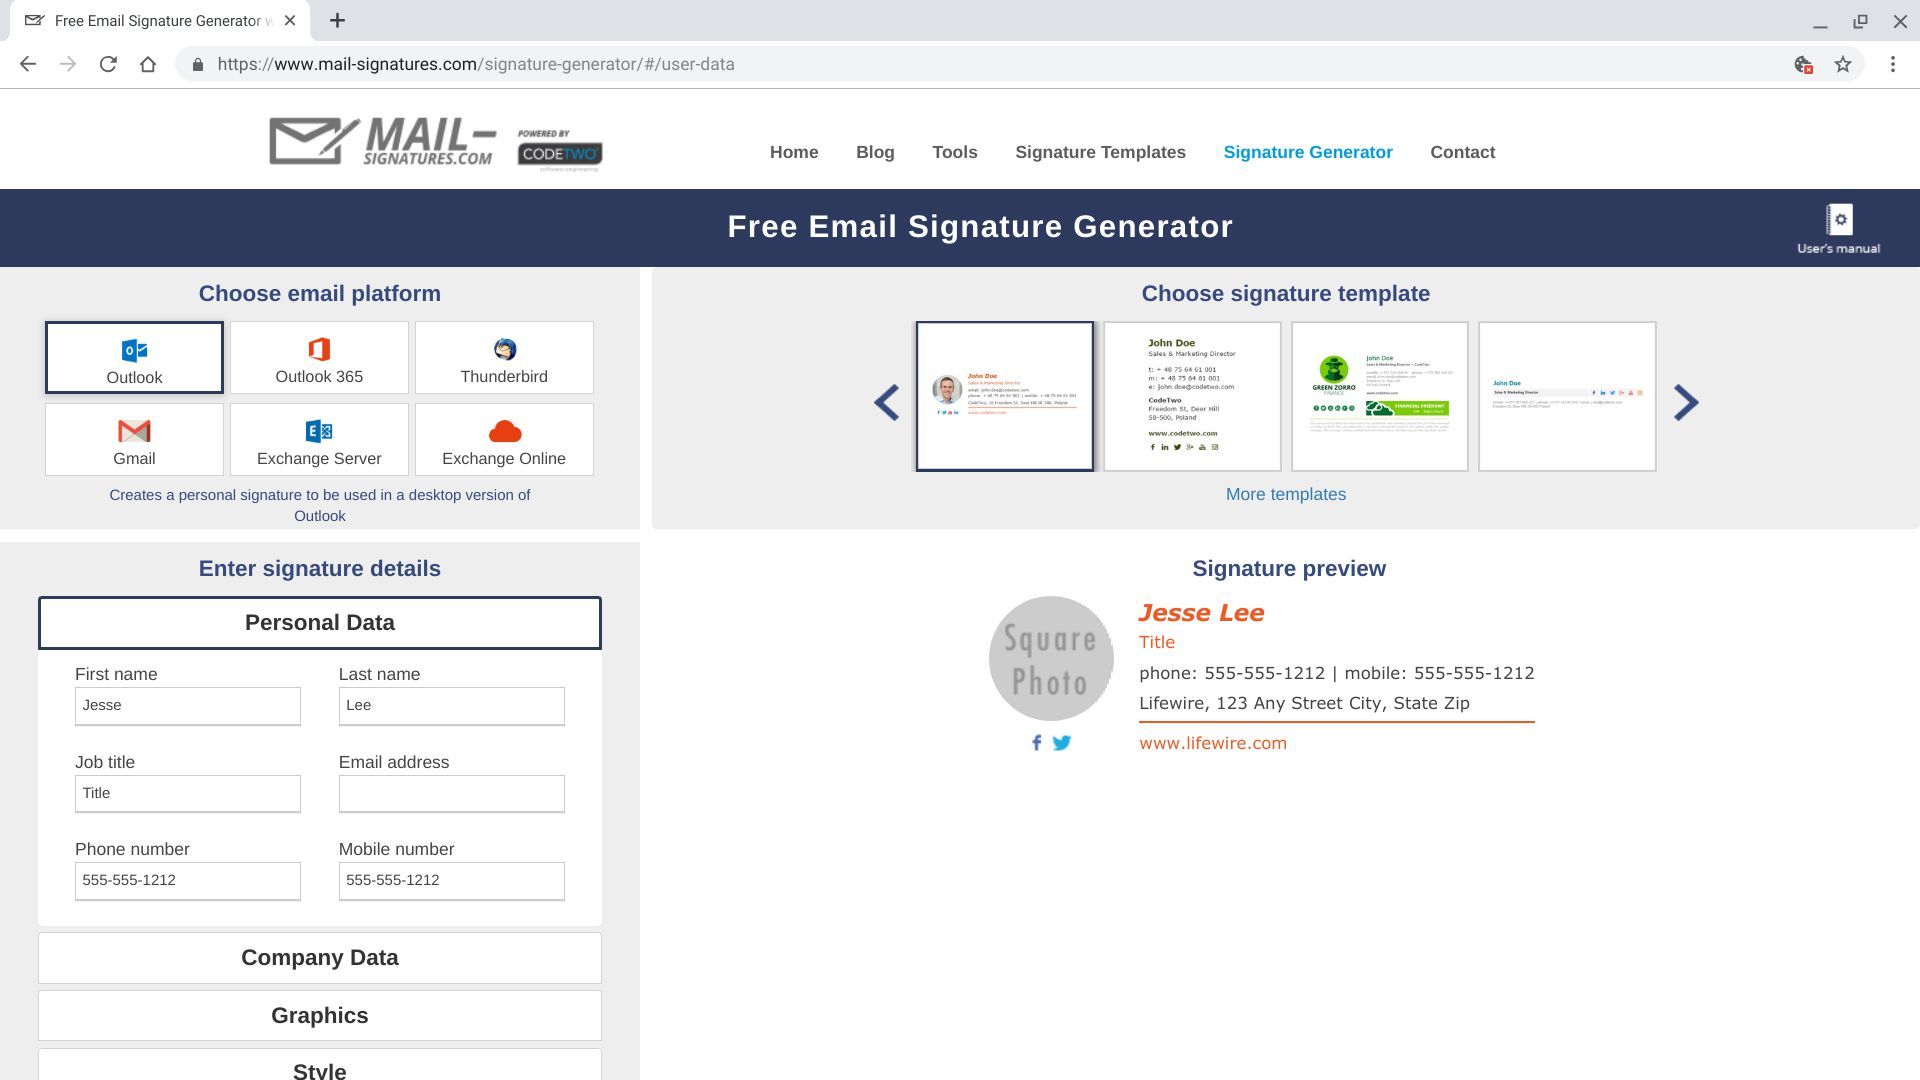 Снимок экрана Mail-Signatures.com с открытыми полями «Личные данные» (имя, должность, адрес электронной почты, номера телефонов)